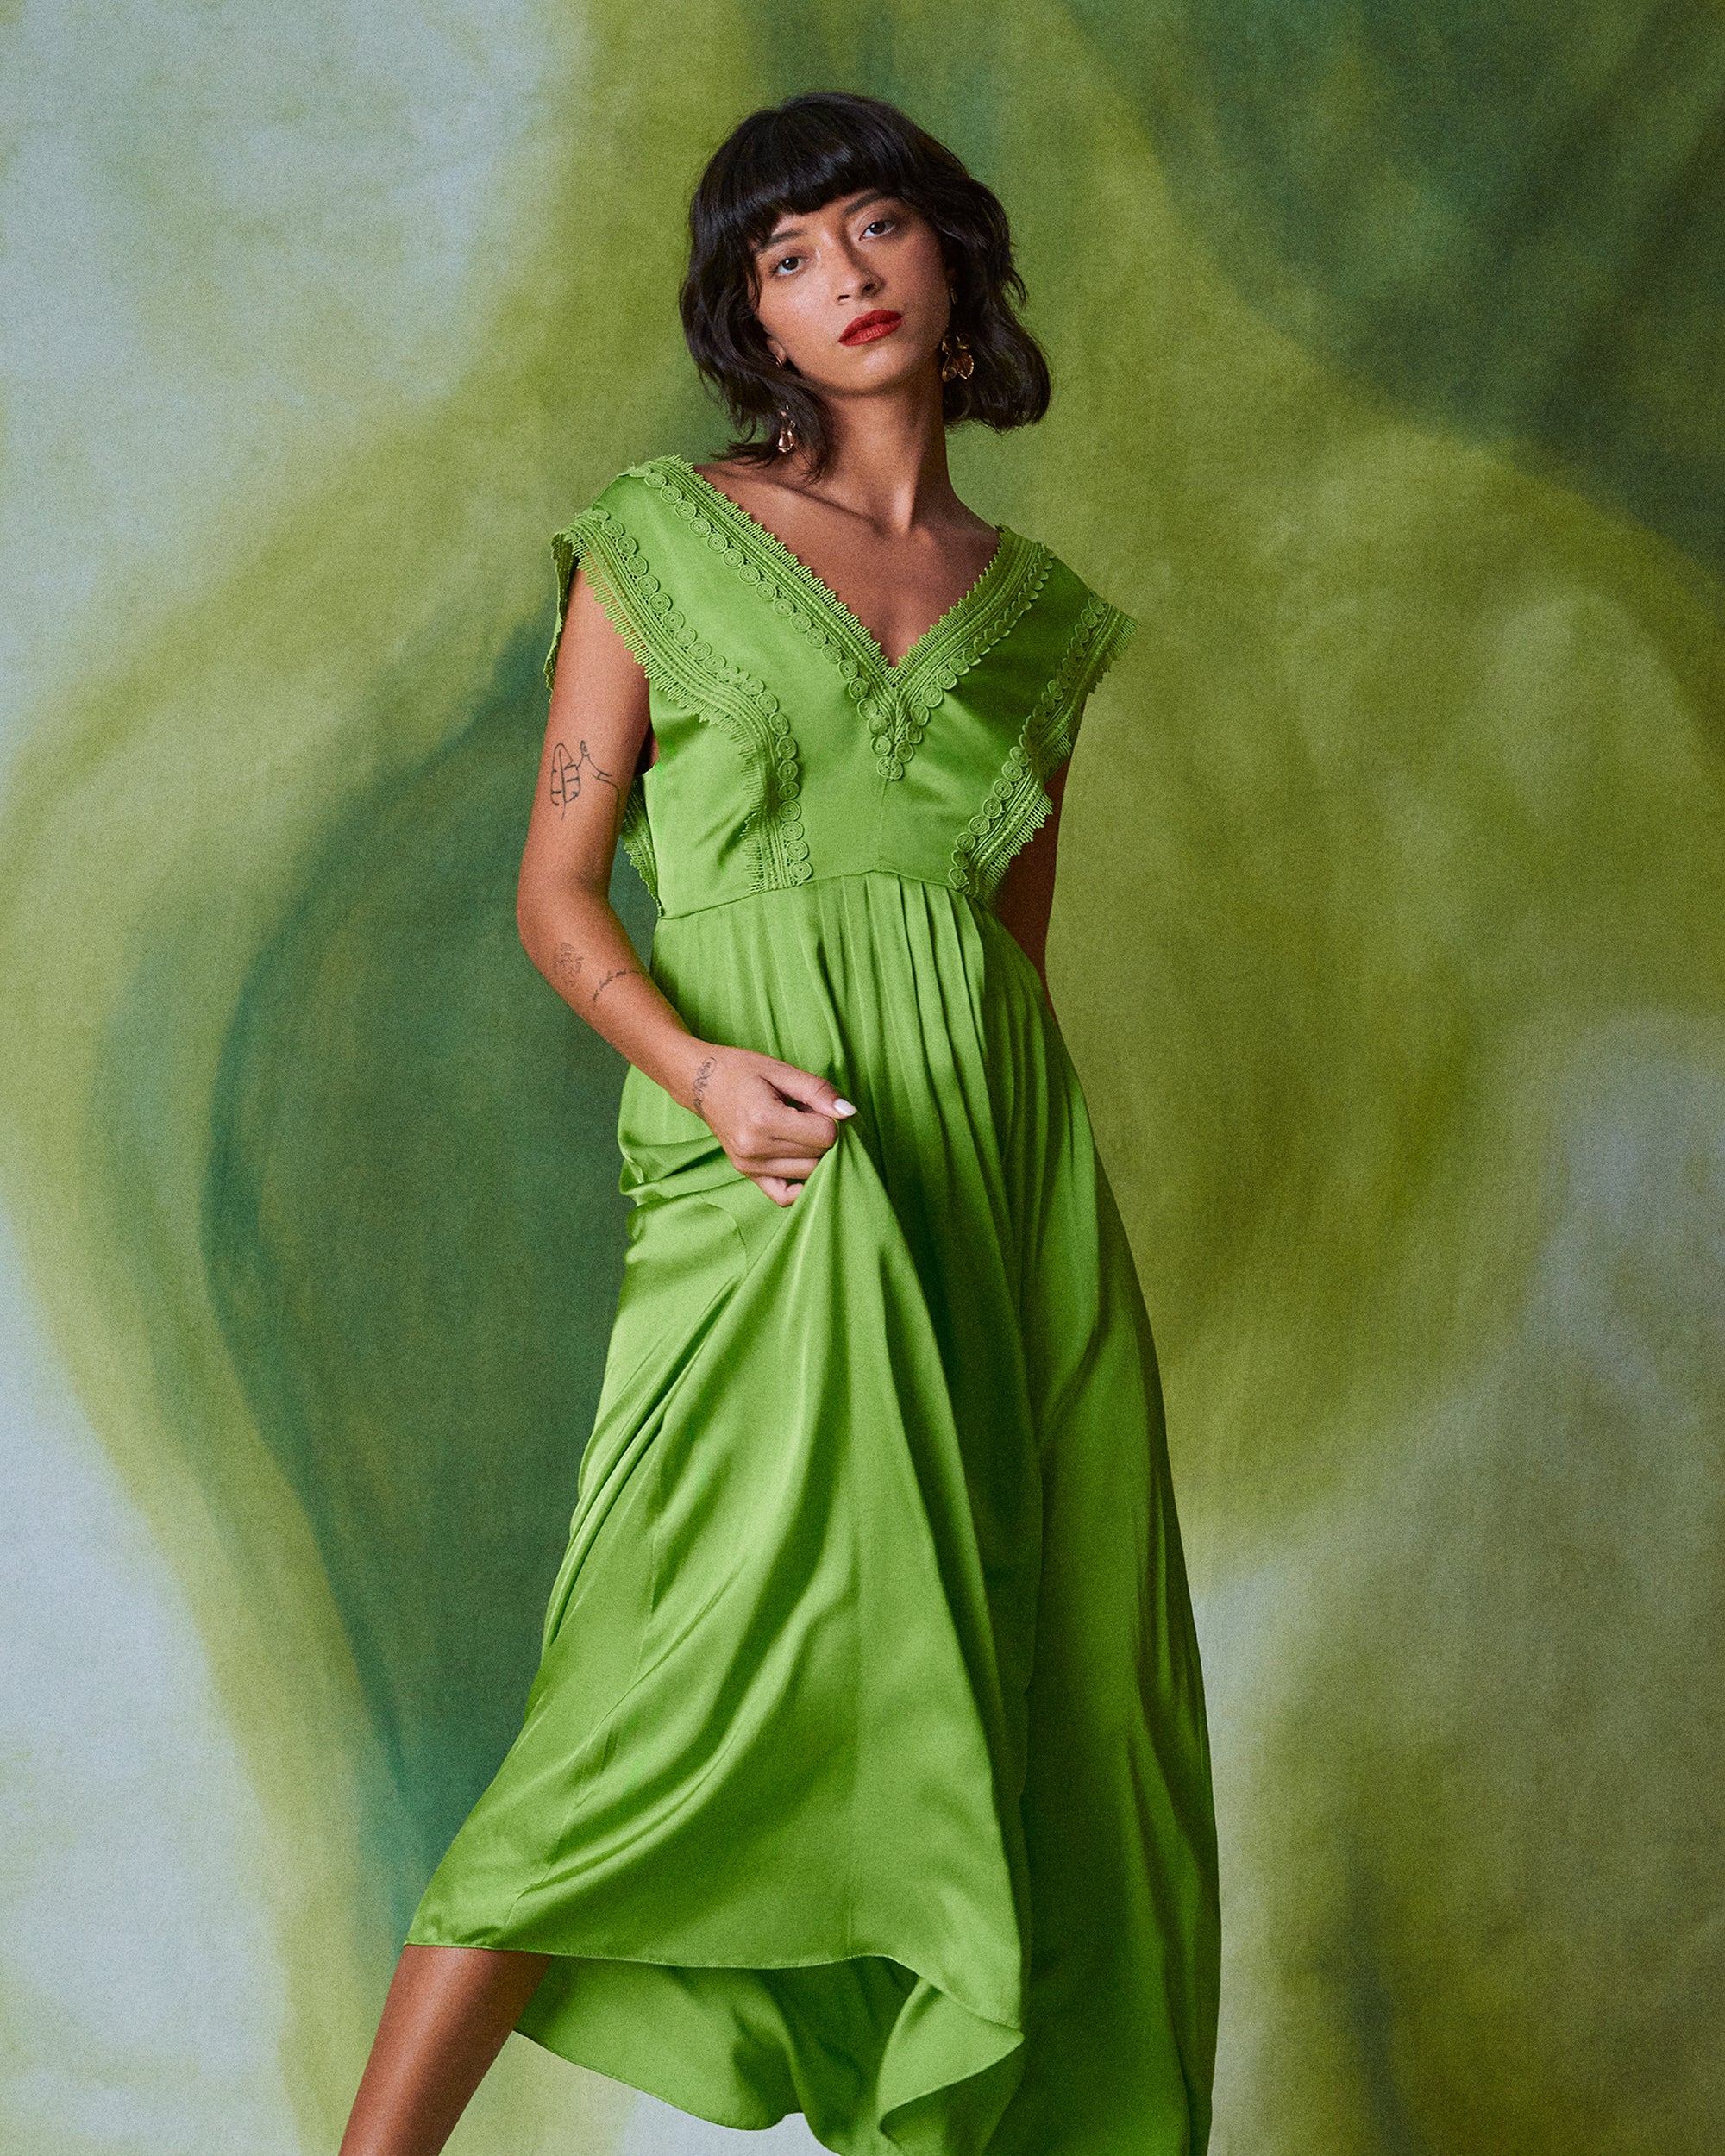 Margot Dress – Diane von Furstenberg